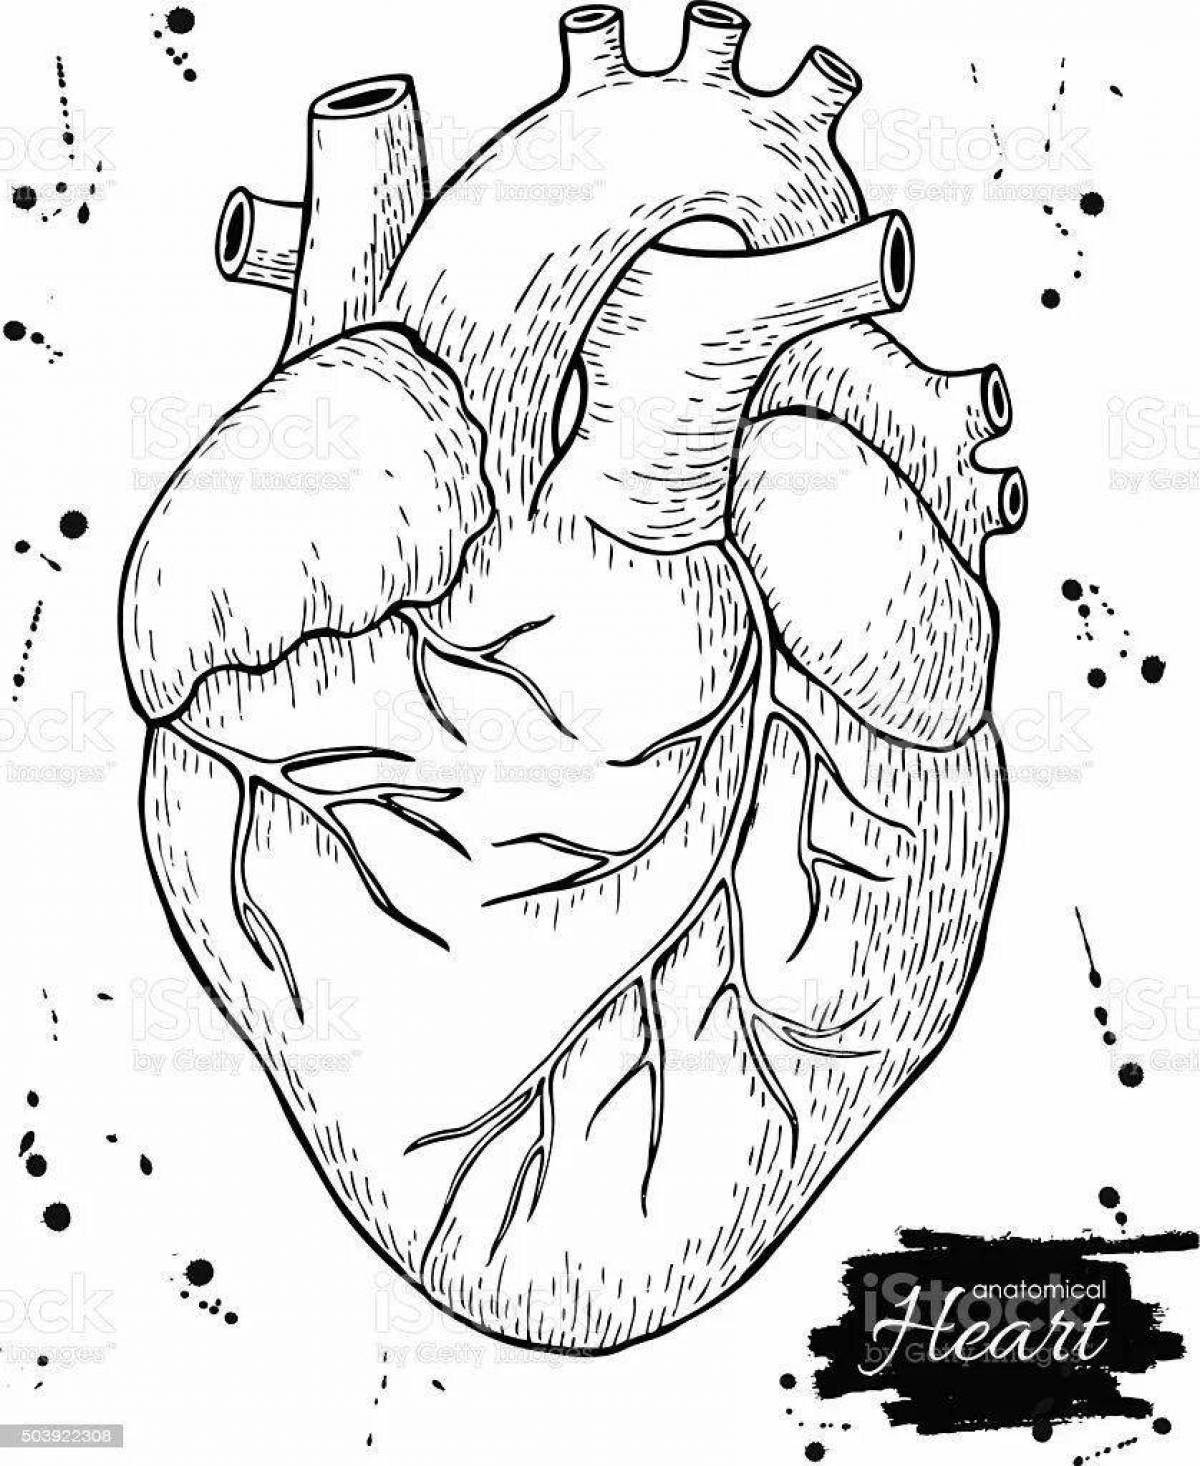 Великолепная раскраска сердечный орган